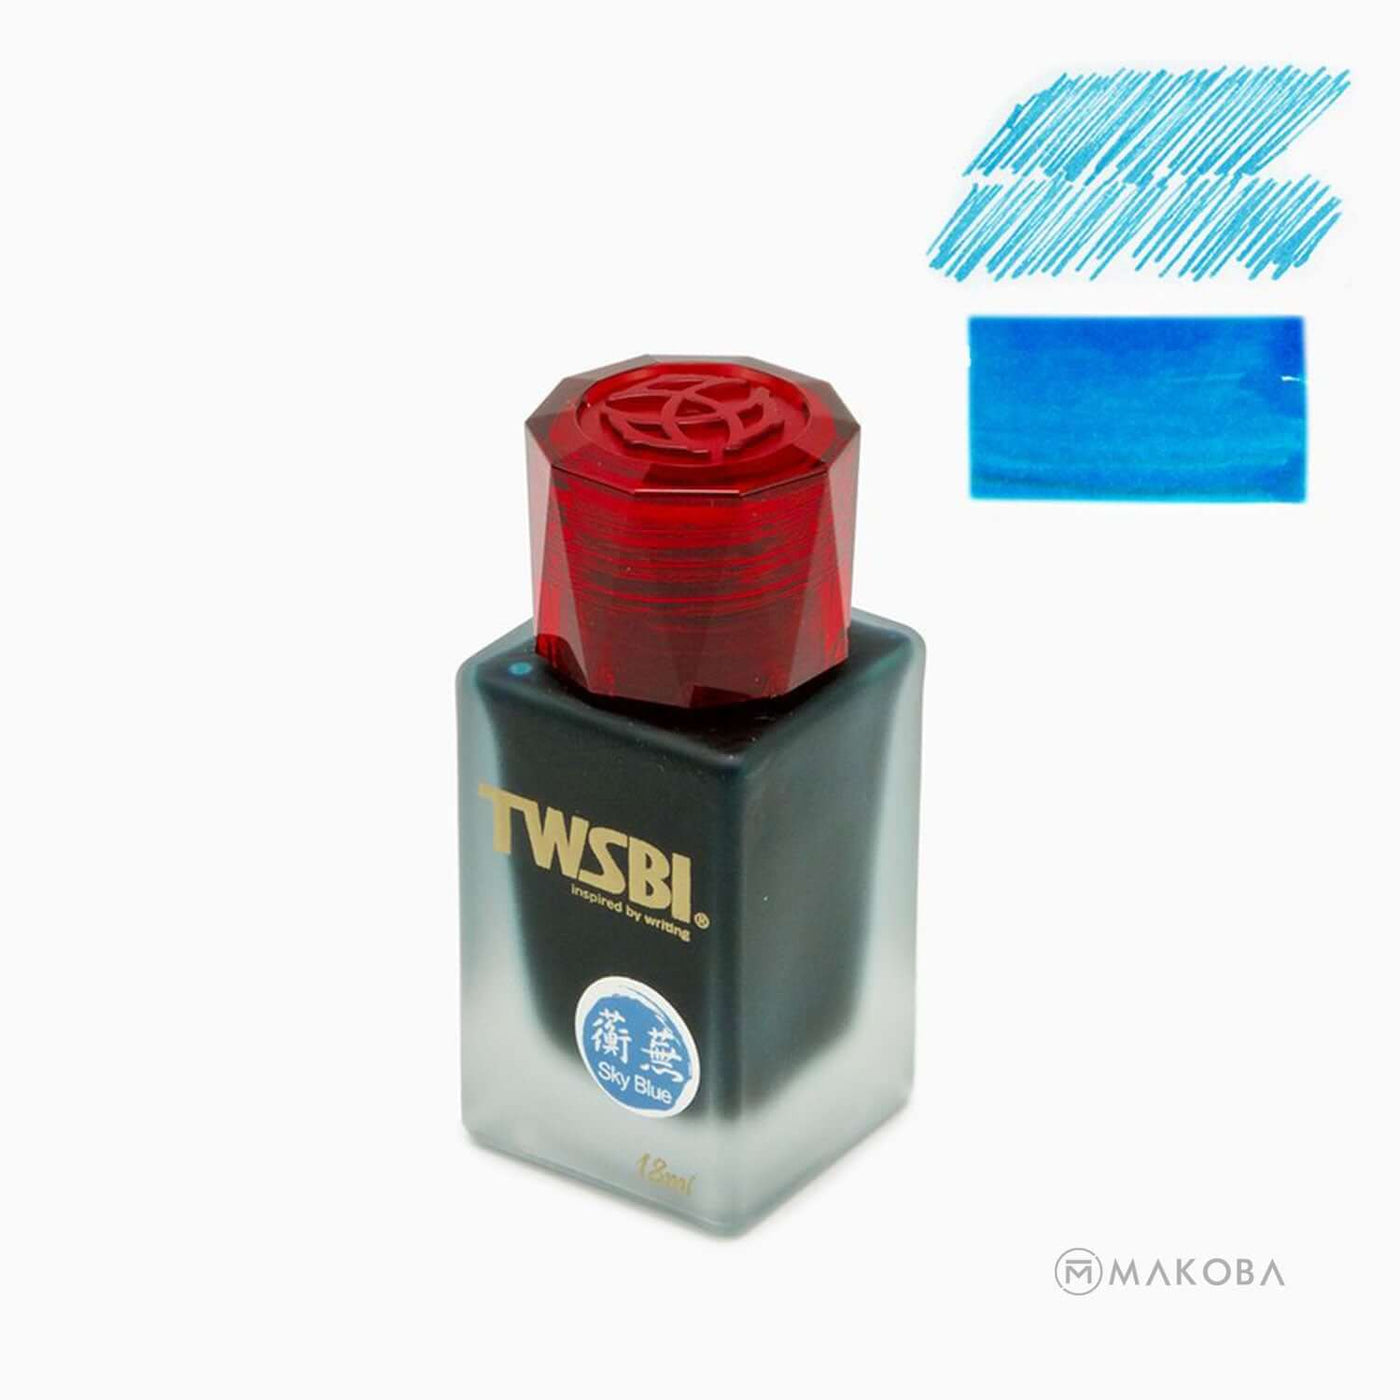 TWSBI 1791 SKY BLUE INK BOTTLE - 18ML